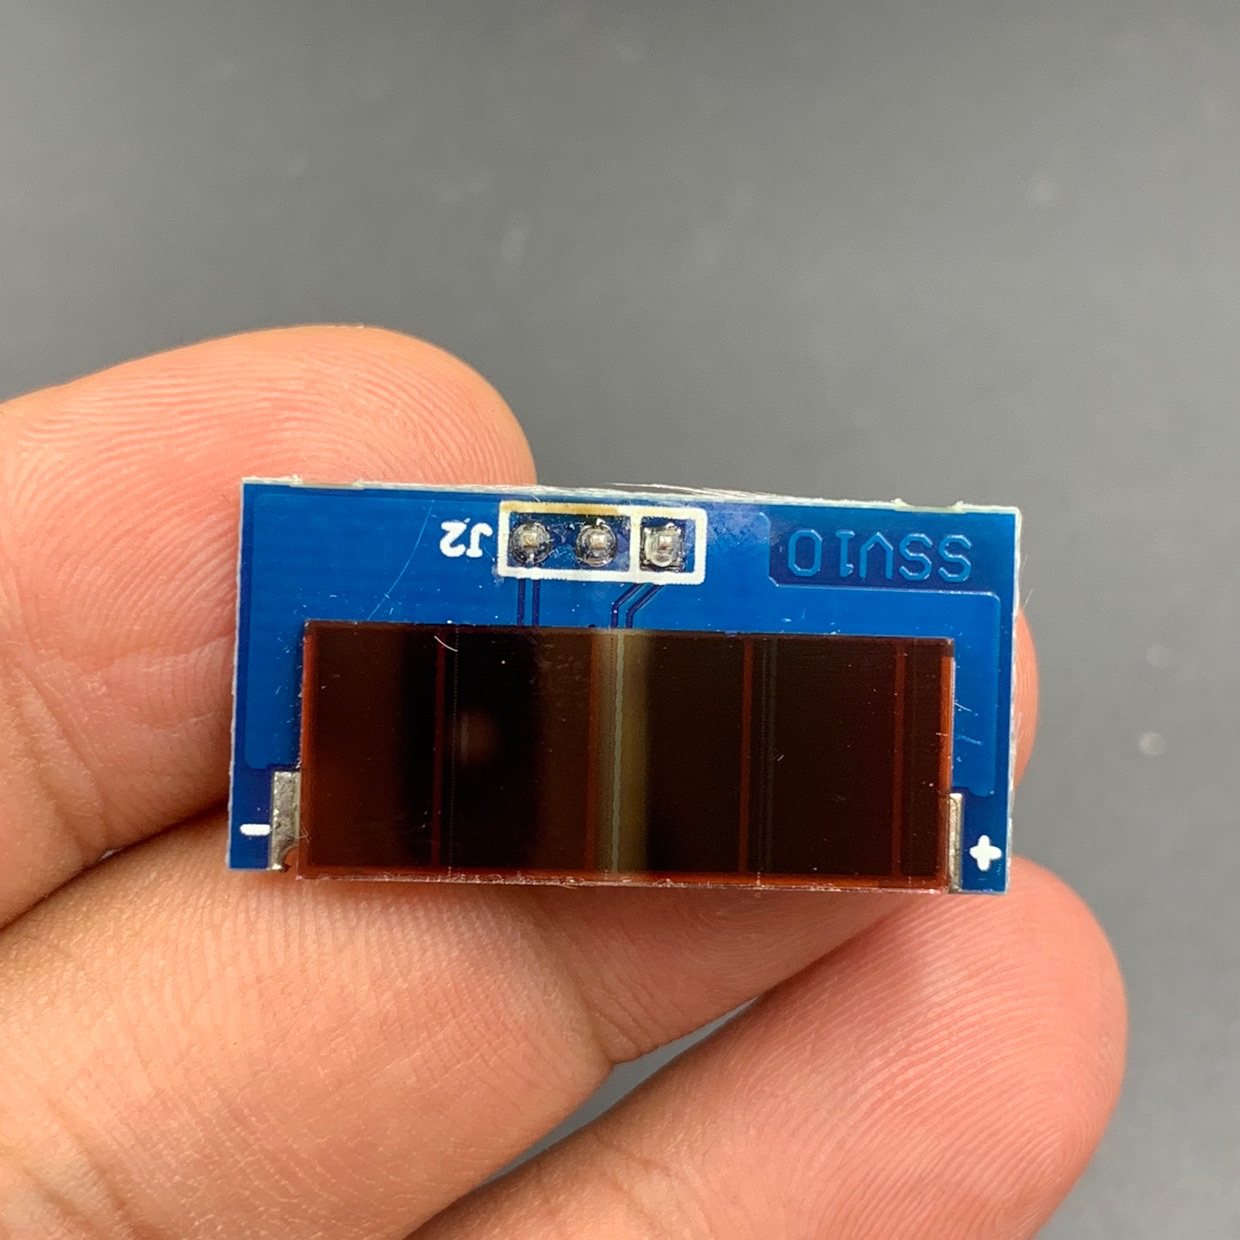 十个价 小太阳能板 带PCB lm358运放 像太阳检测或者供电 研究价